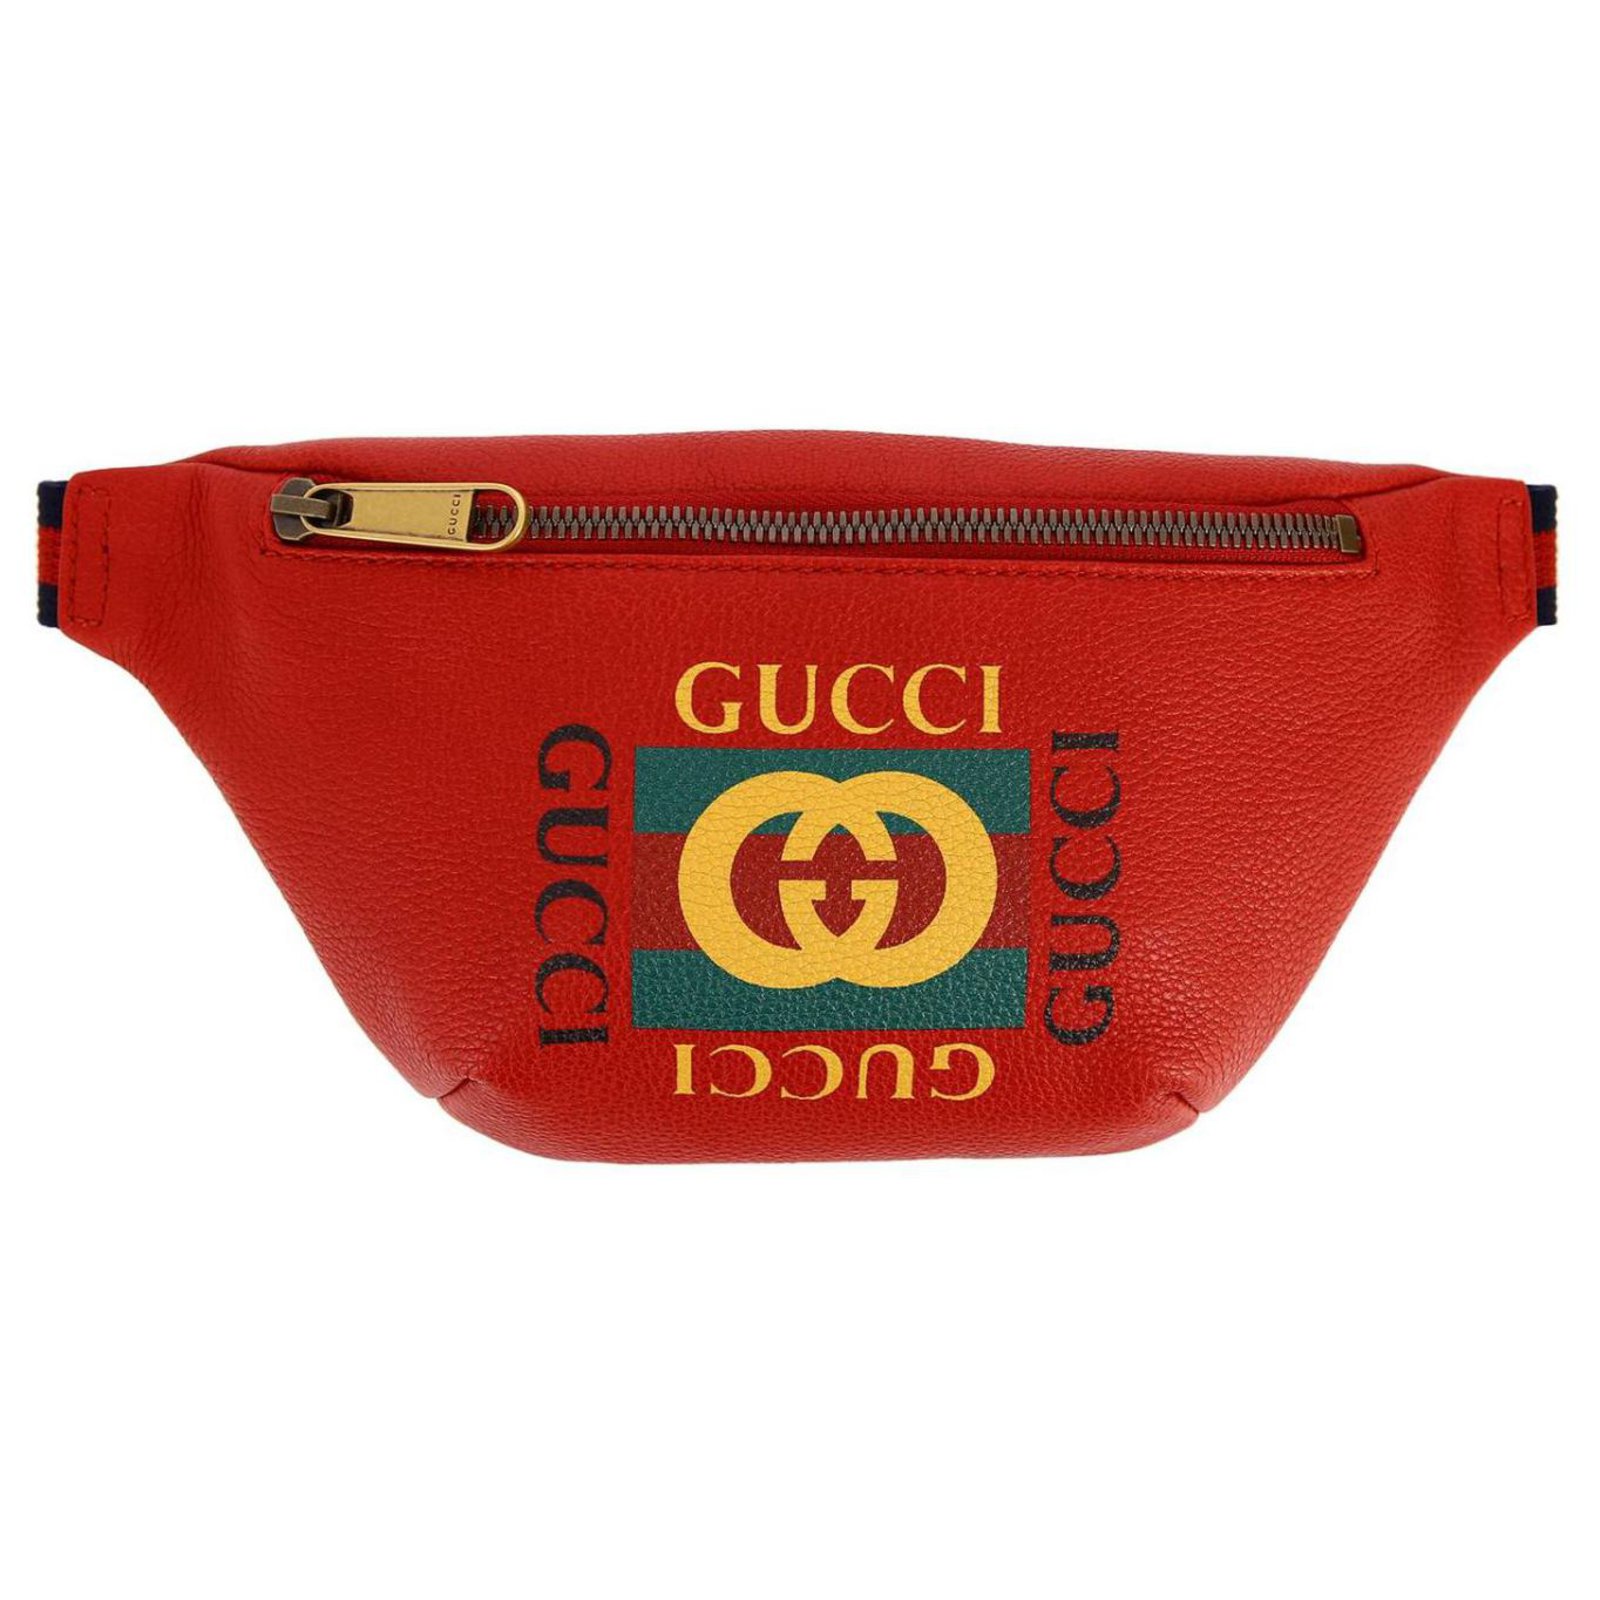 Gucci GUCCI BRANDED VINTAGE BELT BAG 